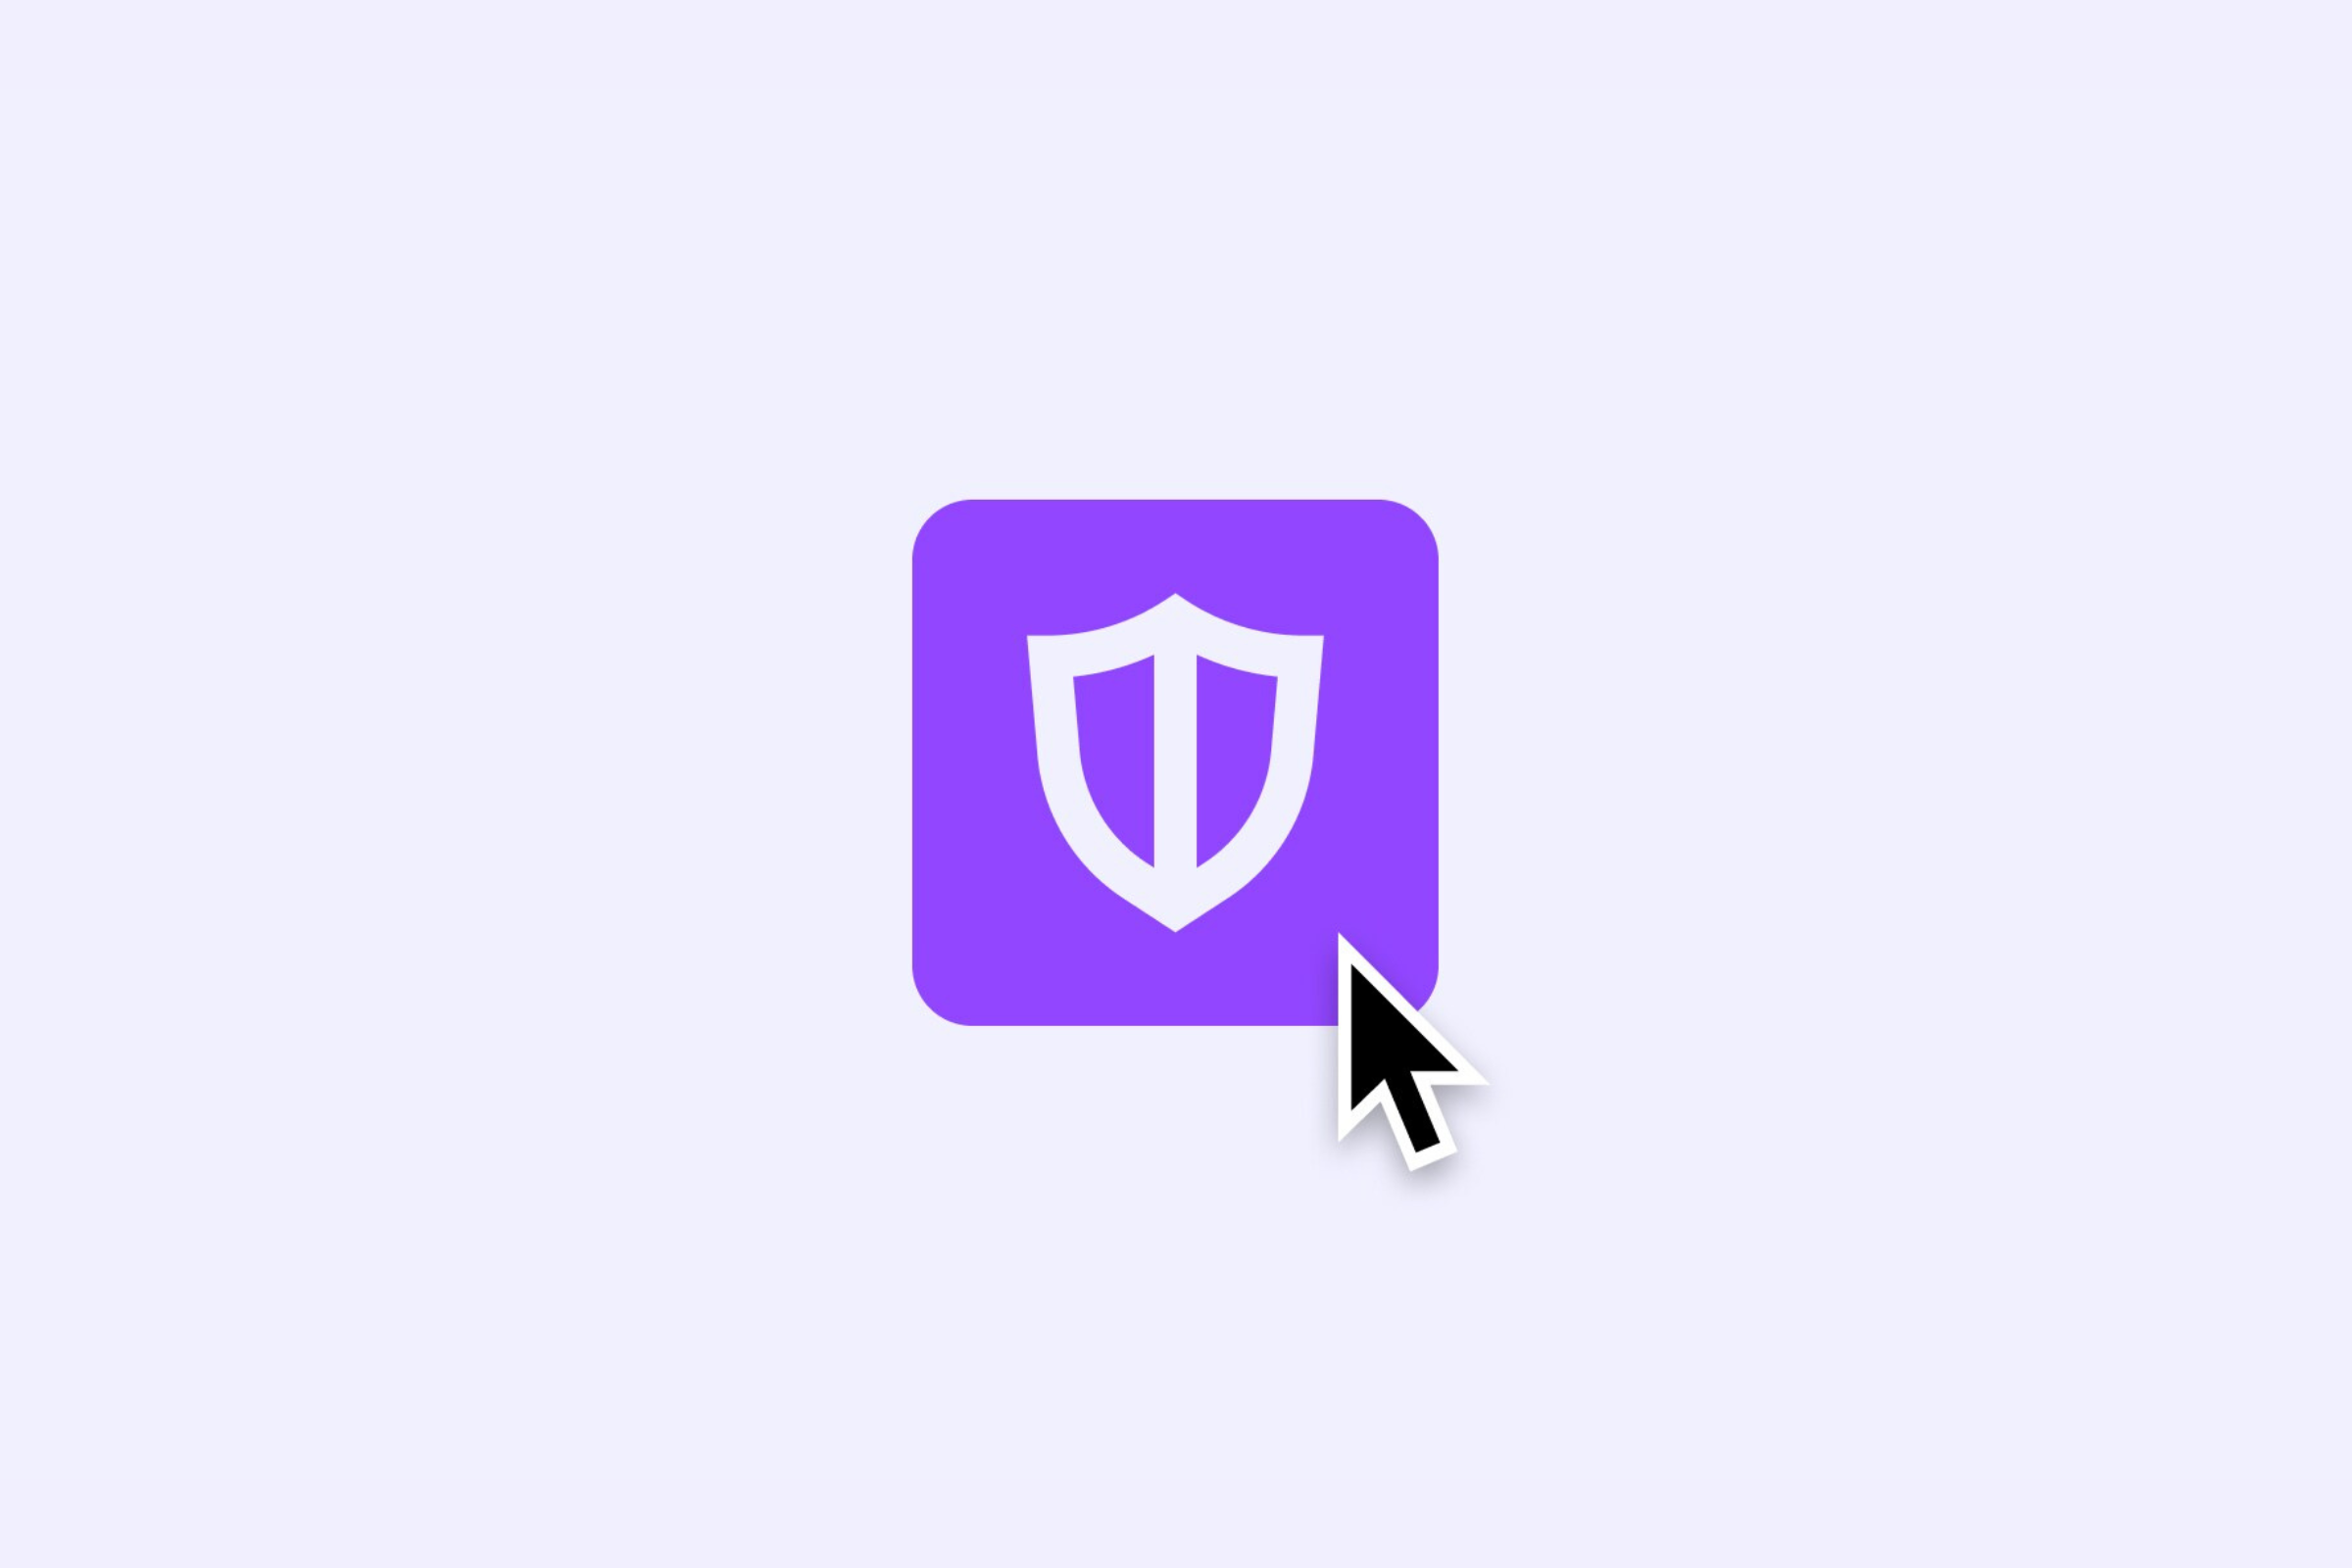 Der Twitch Shield-Modus bietet Streamern eine einfache Ein-Klick-Option für verbesserten Schutz